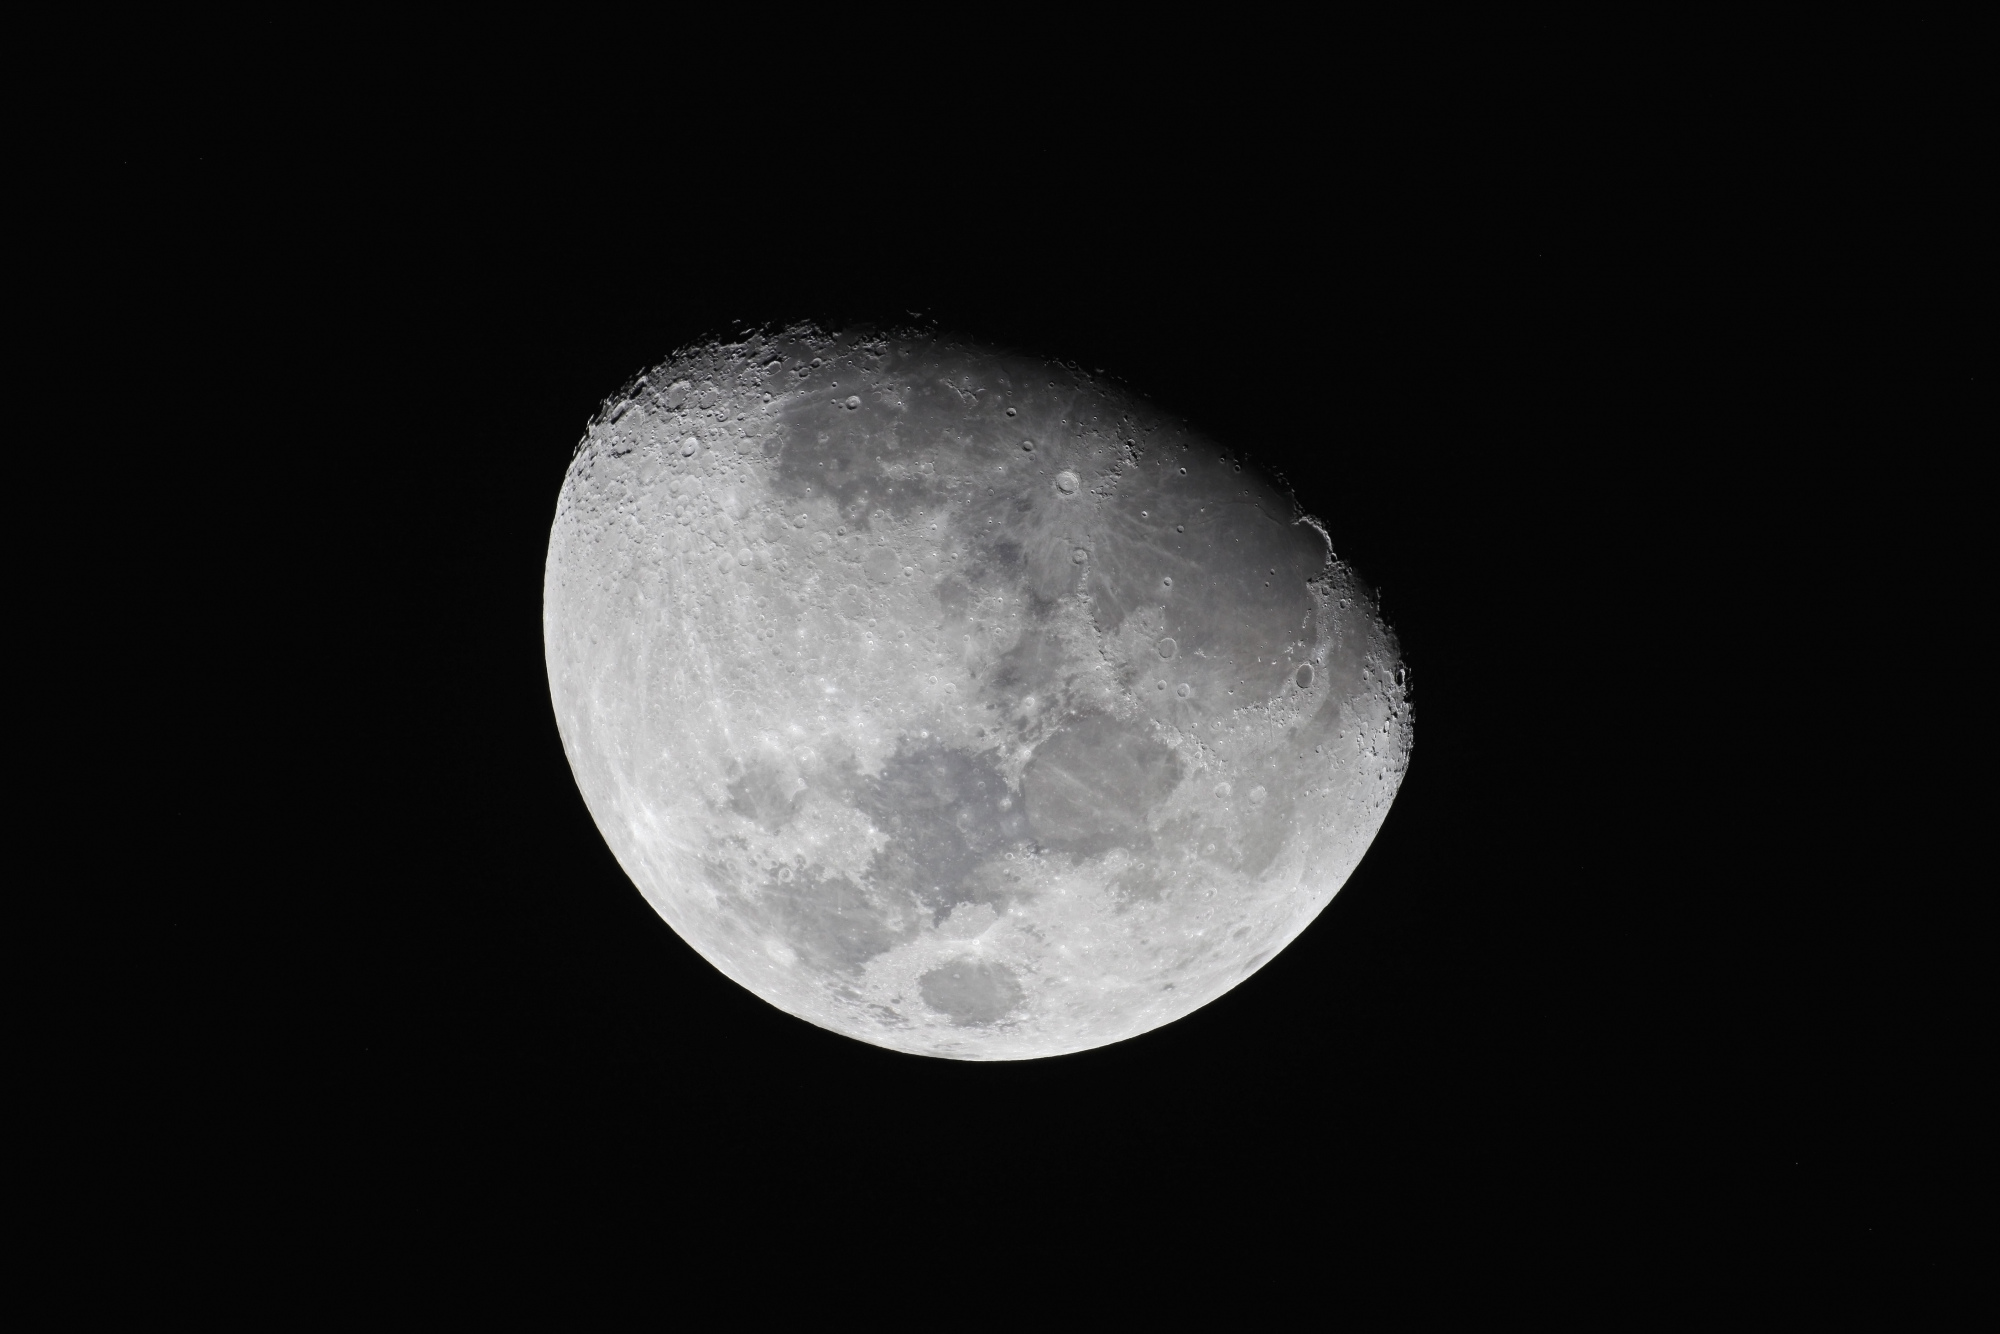 Lune 071119 RR 1:60 400 iso.jpg